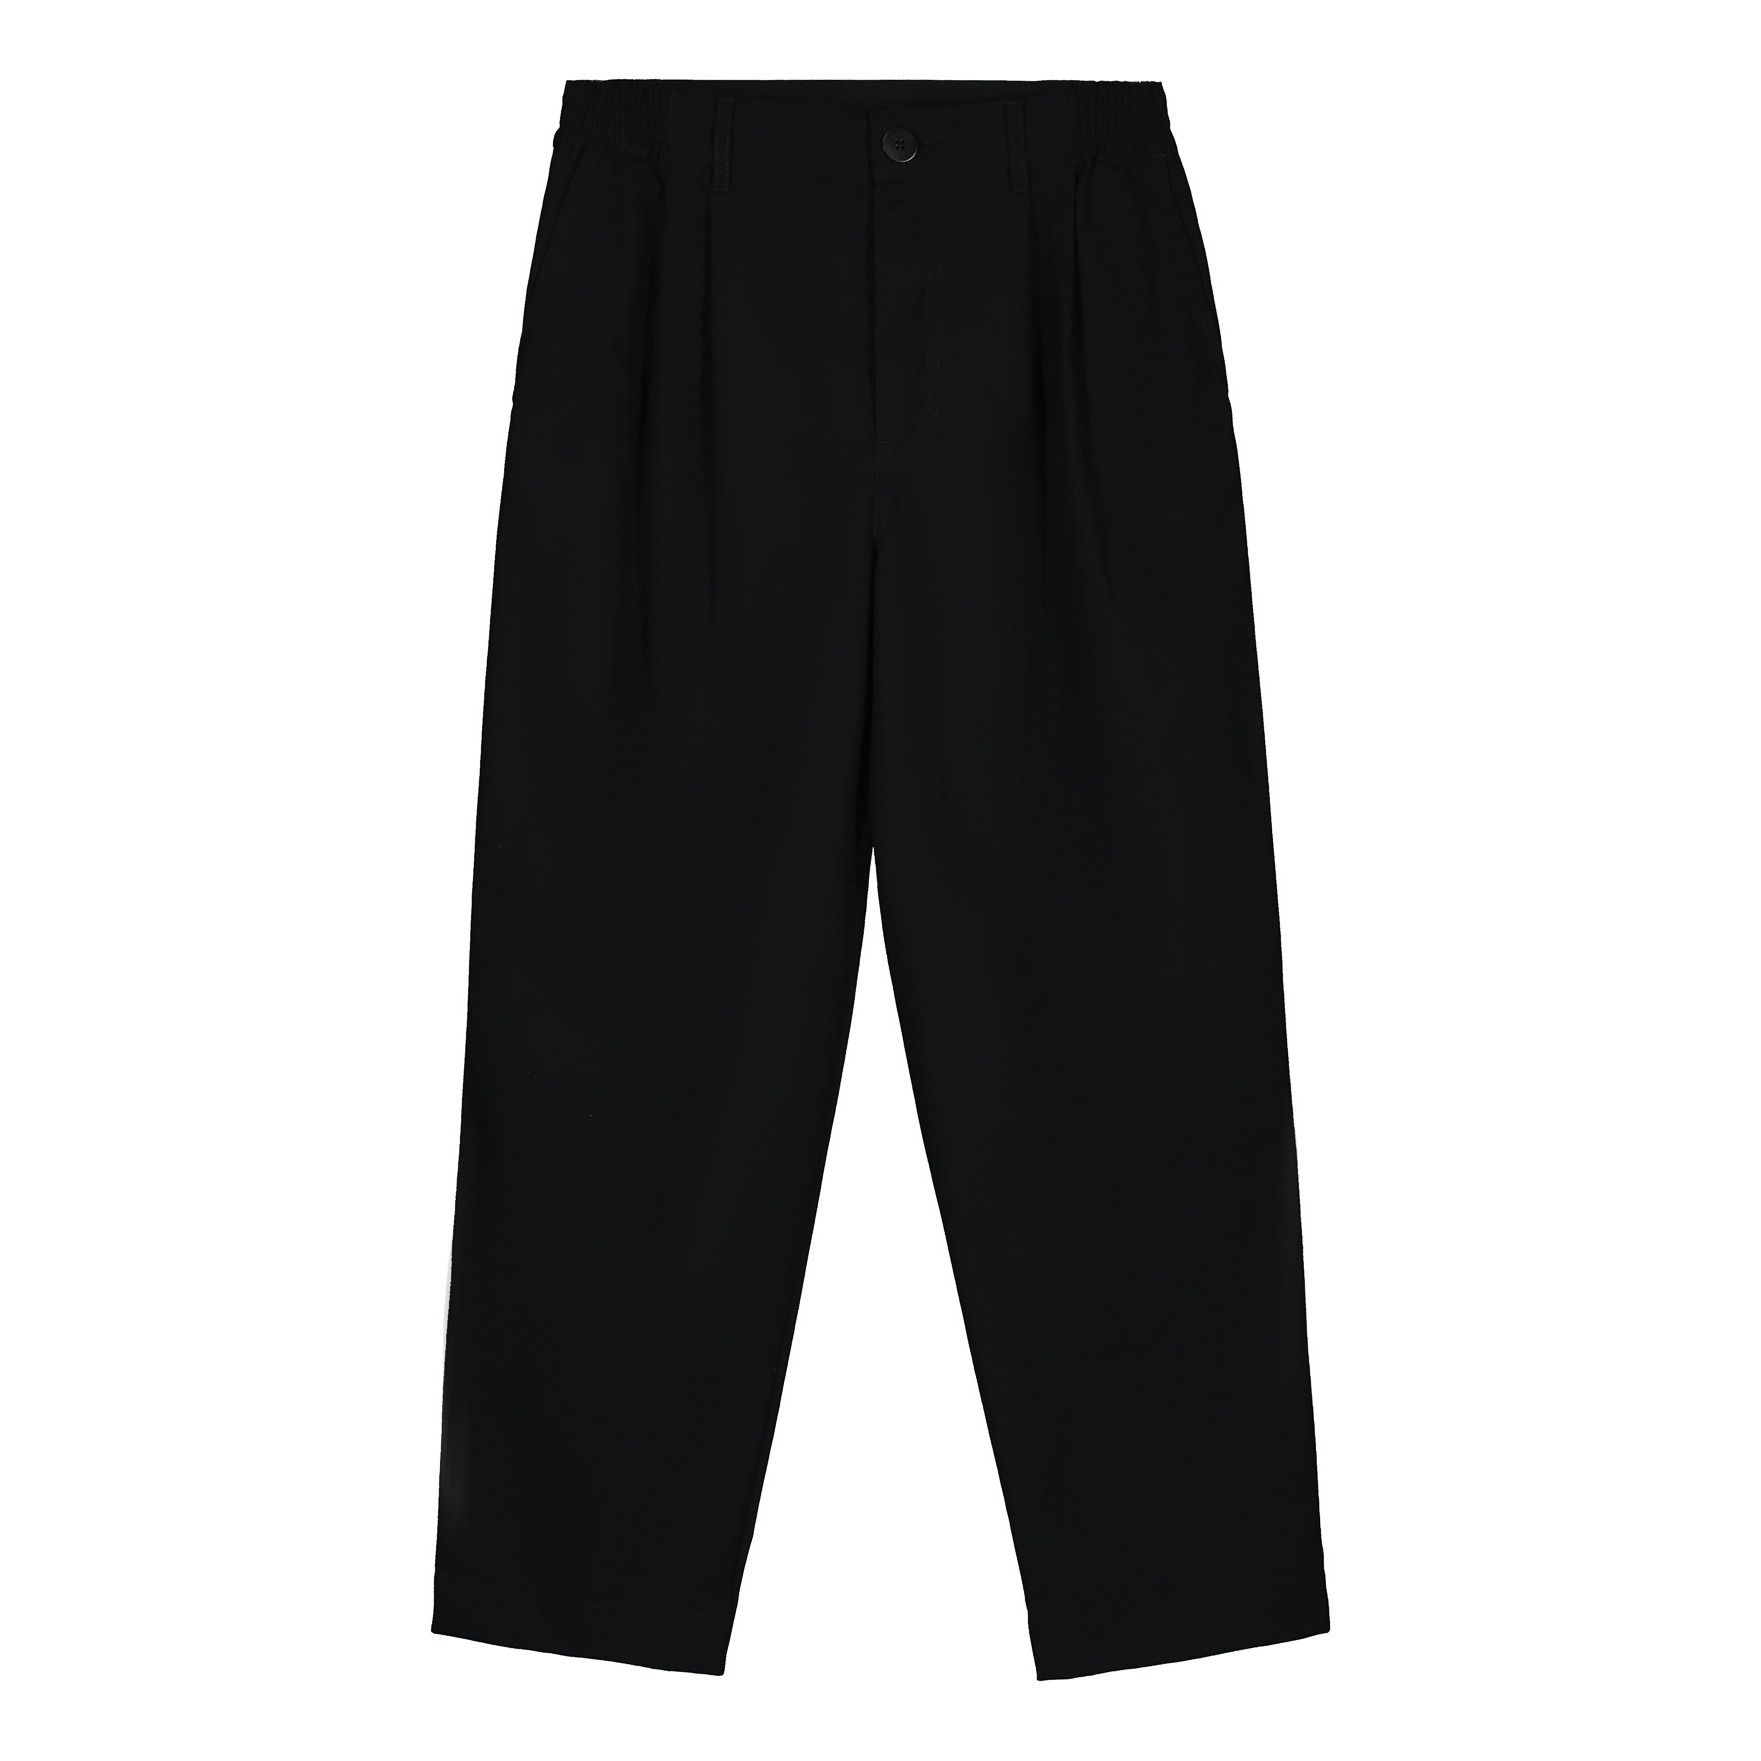 Kowtow - Pantalon Standard Coton Bio - Femme - Noir